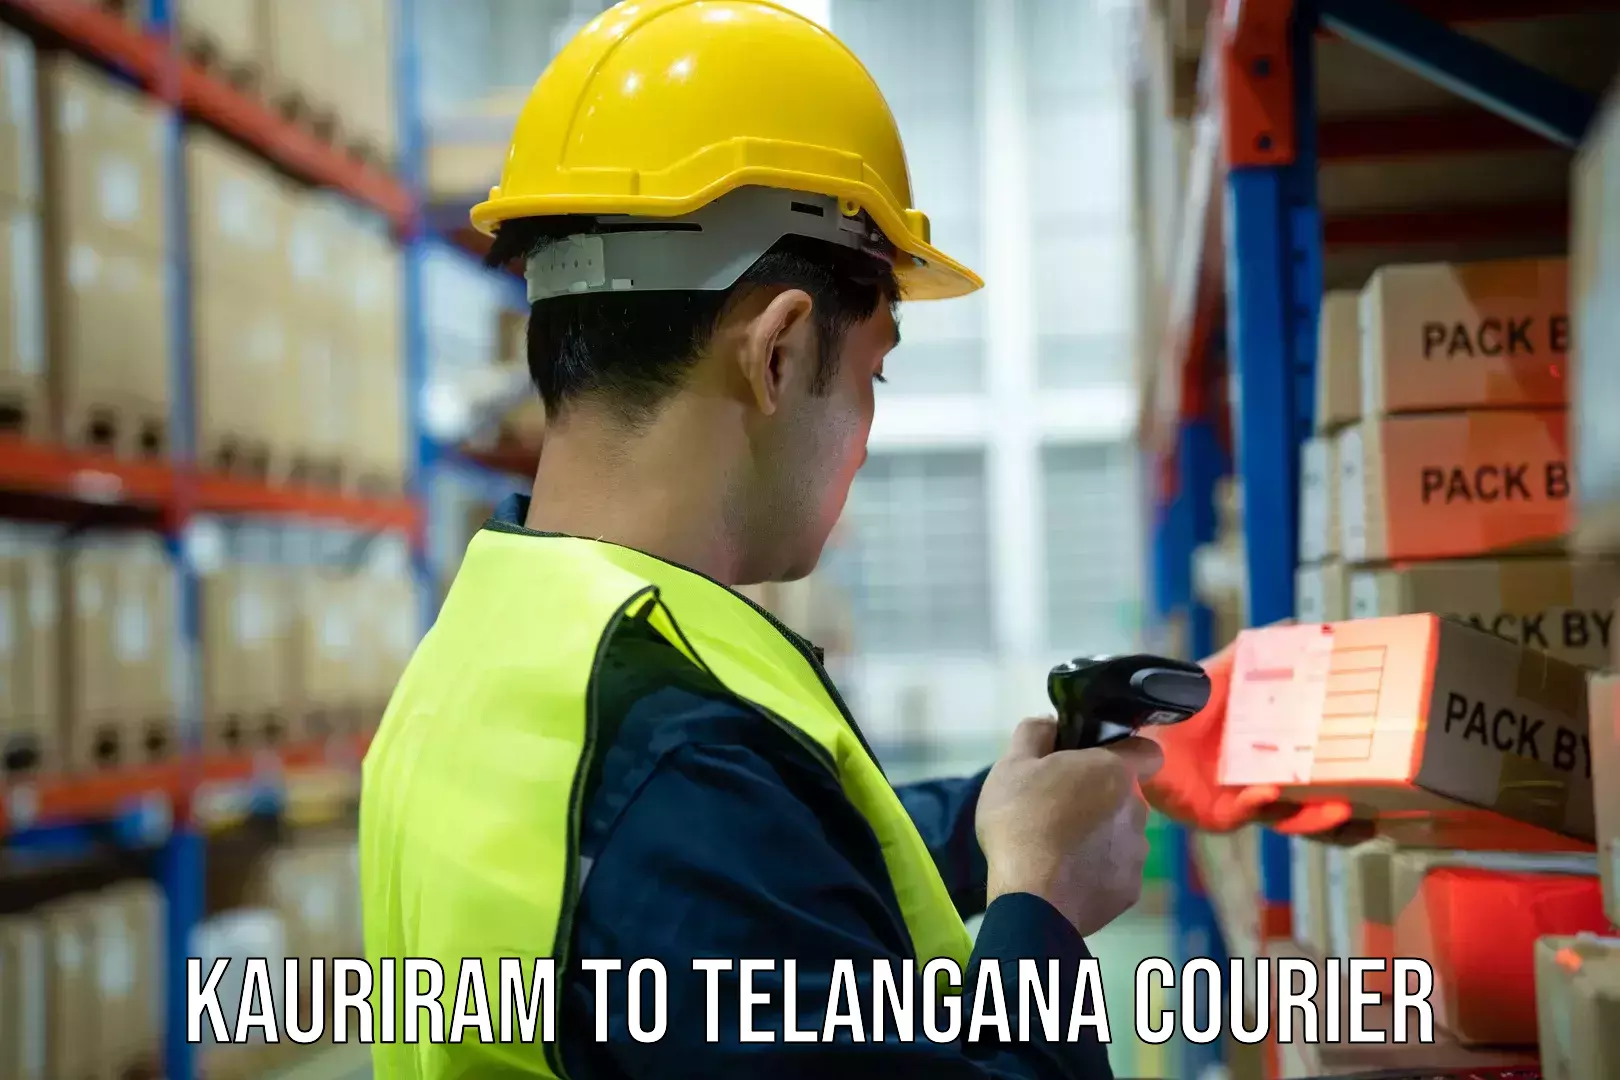 Next-day freight services Kauriram to Telangana